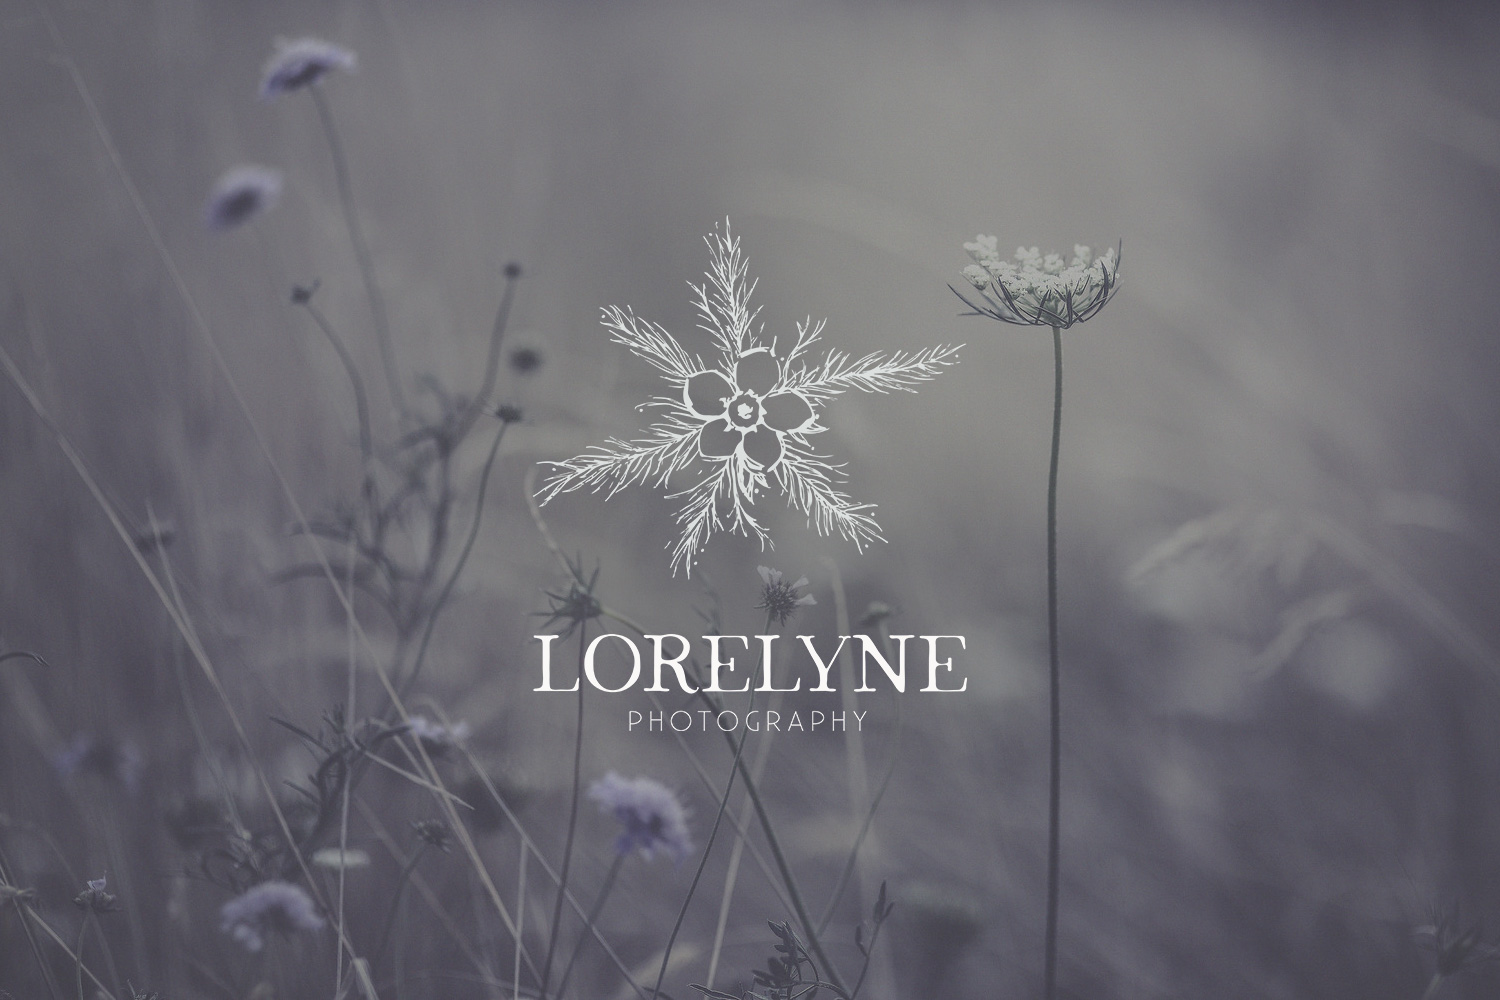 Lorelyne Photography Photographe Photographer branding logo logotype visual identity botanical flower nature plant